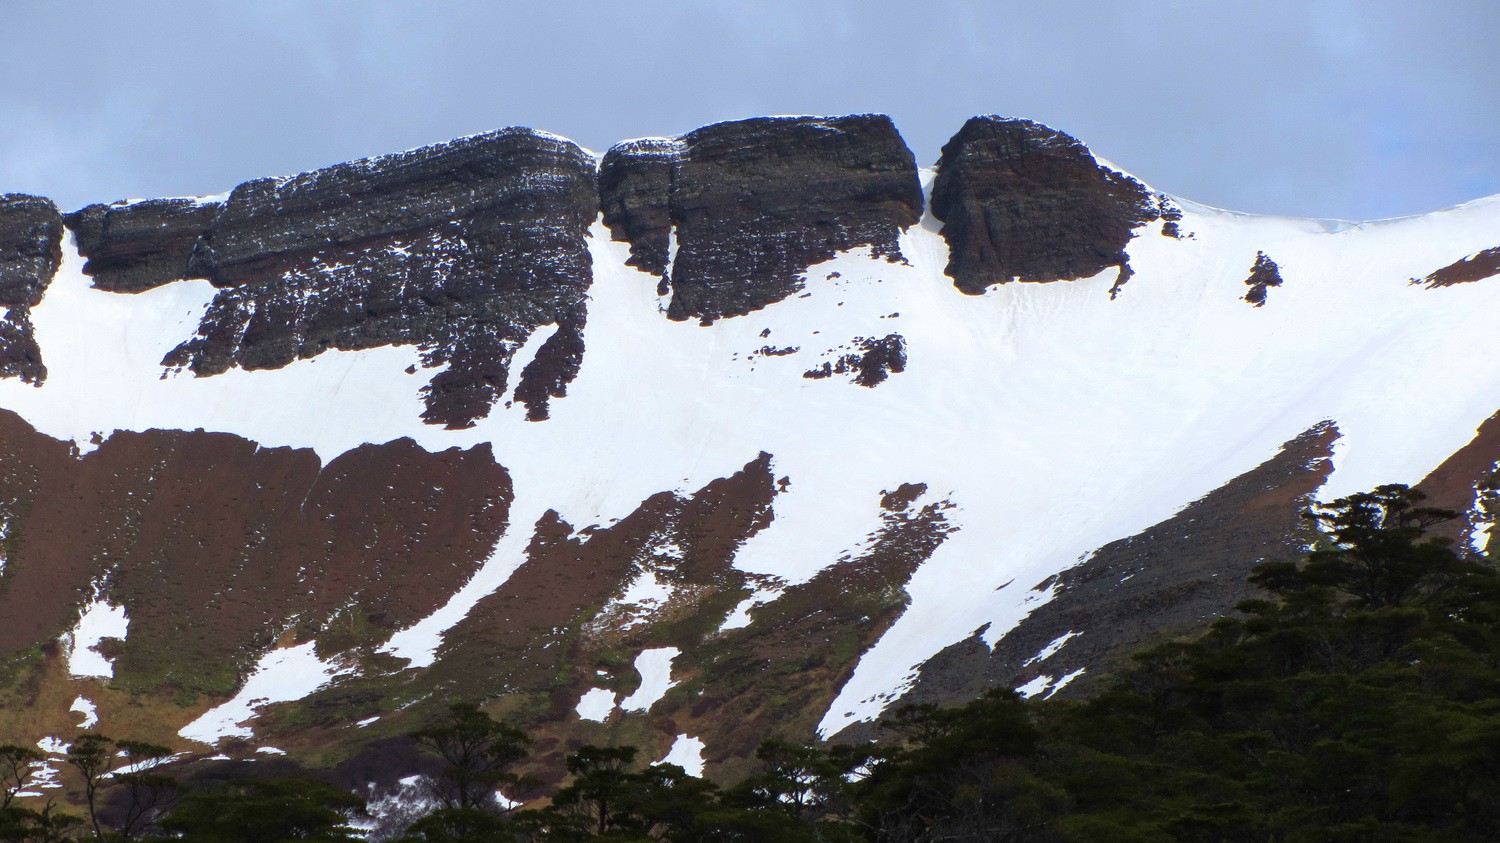 825 meters high Monte Tarn